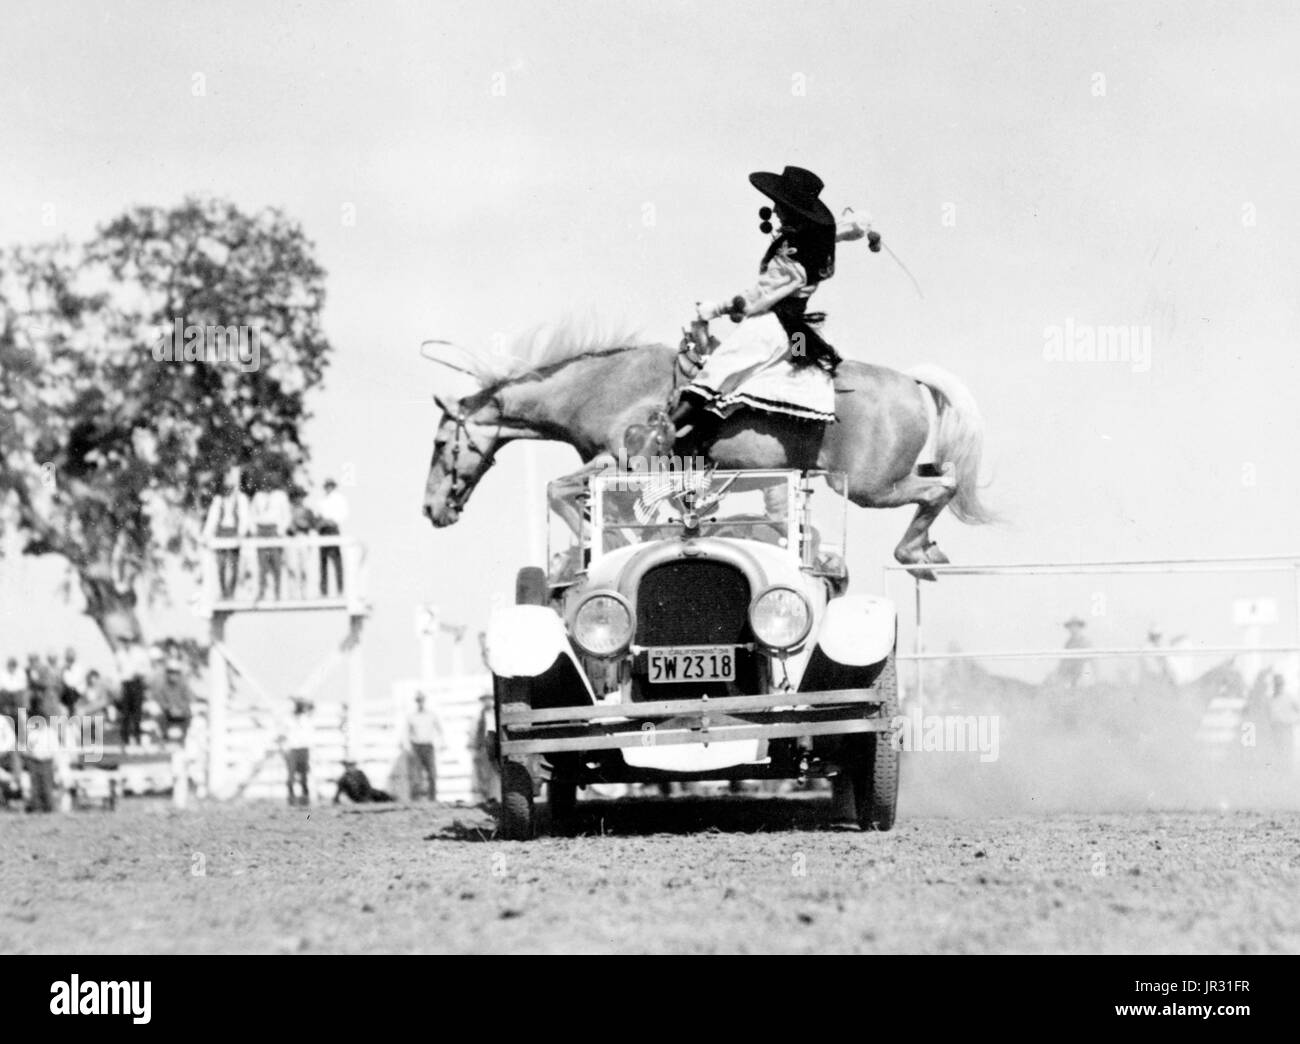 Cowgirl auf Pferd erscheinen, über ein Cabrio Auto angetrieben von einem Mann bei einem Rodeo zu springen. Frauen haben in der Vergangenheit lange Rodeo teilgenommen. "Grasland Rose" Henderson debütierte das Cheyenne Rodeo im Jahre 1901 und 1920 traten Frauen in rauen vordefinierte Ereignisse, Staffelläufe und Trick Reiten. Aber nach Bonnie McCarrol in Pendleton Round-Up im Jahr 1929 starb und Marie Gibson in einem Pferd Wrack 1933 starb, war die Beteiligung von Frauen wettbewerbsfähig gebremst. Rodeo-Frauen in verschiedenen Verbänden organisiert und inszeniert ihre eigene Rodeos. Heute ist Frauen Faßlaufen sogar als eine wettbewerbsfähige Stockfoto